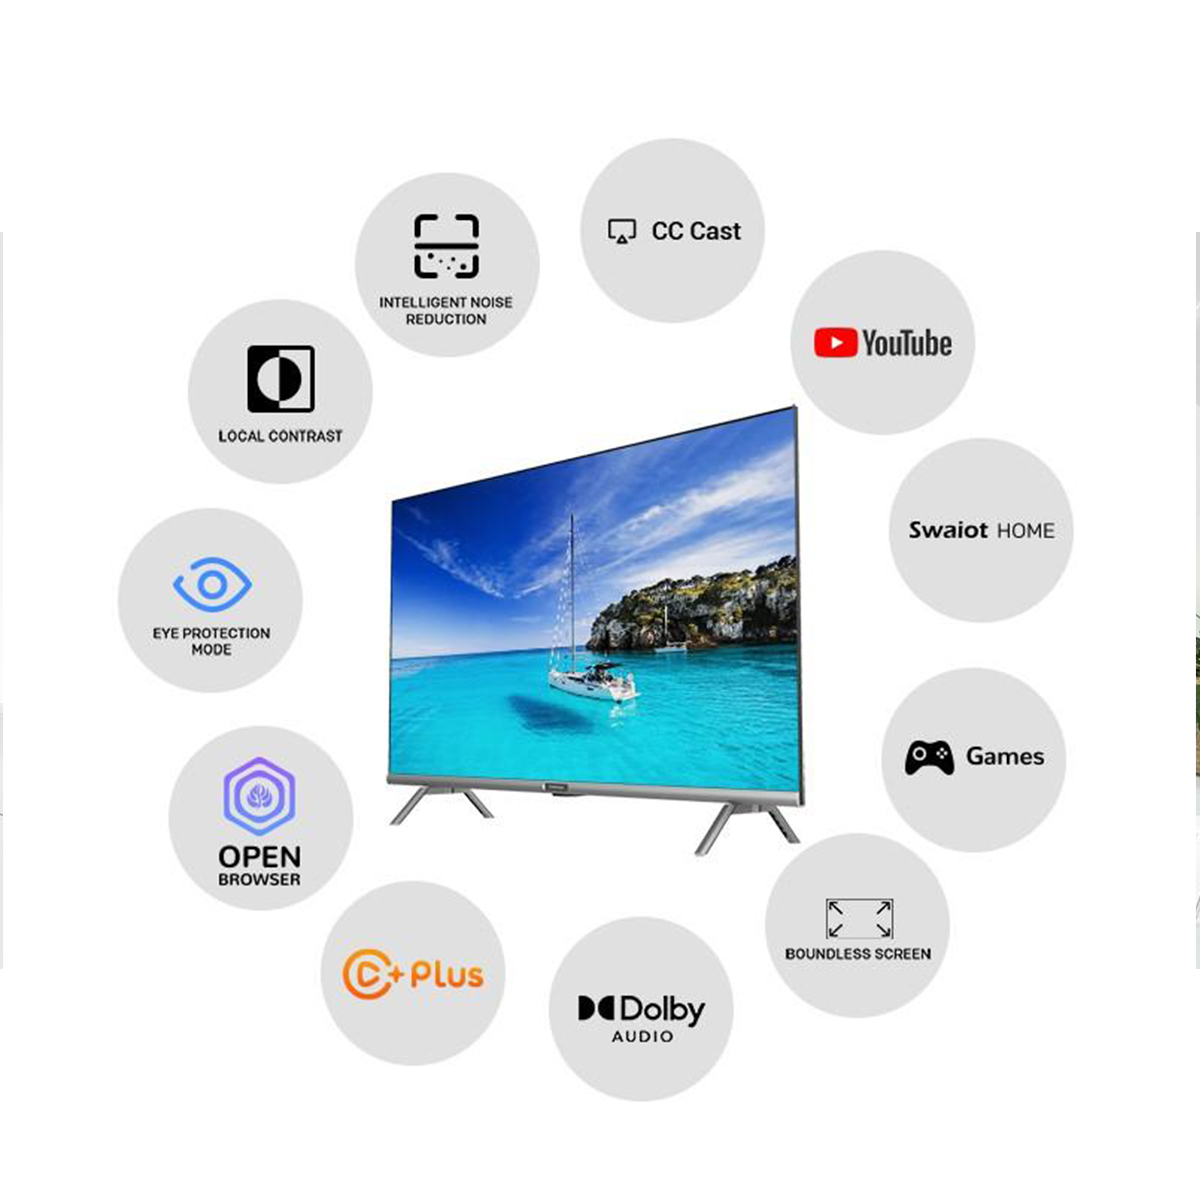 Tivi Coocaa 43 Inch Model 43S3U Smart tivi Full HD, kết nối wifi, Mỏng nhẹ Siêu chất lượng, Đồng kiểm, Đổi trả 30 ngày, Bảo hành 24 tháng - Komex